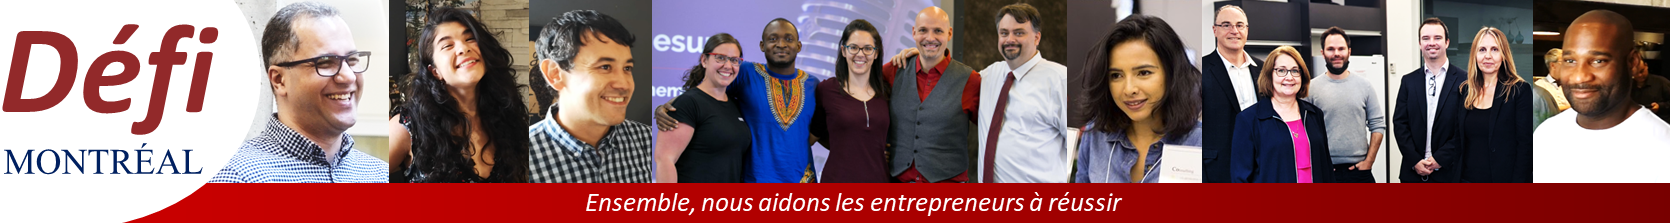 Défi Montréal - La plus grande communauté de soutien pour les entrepreneurs